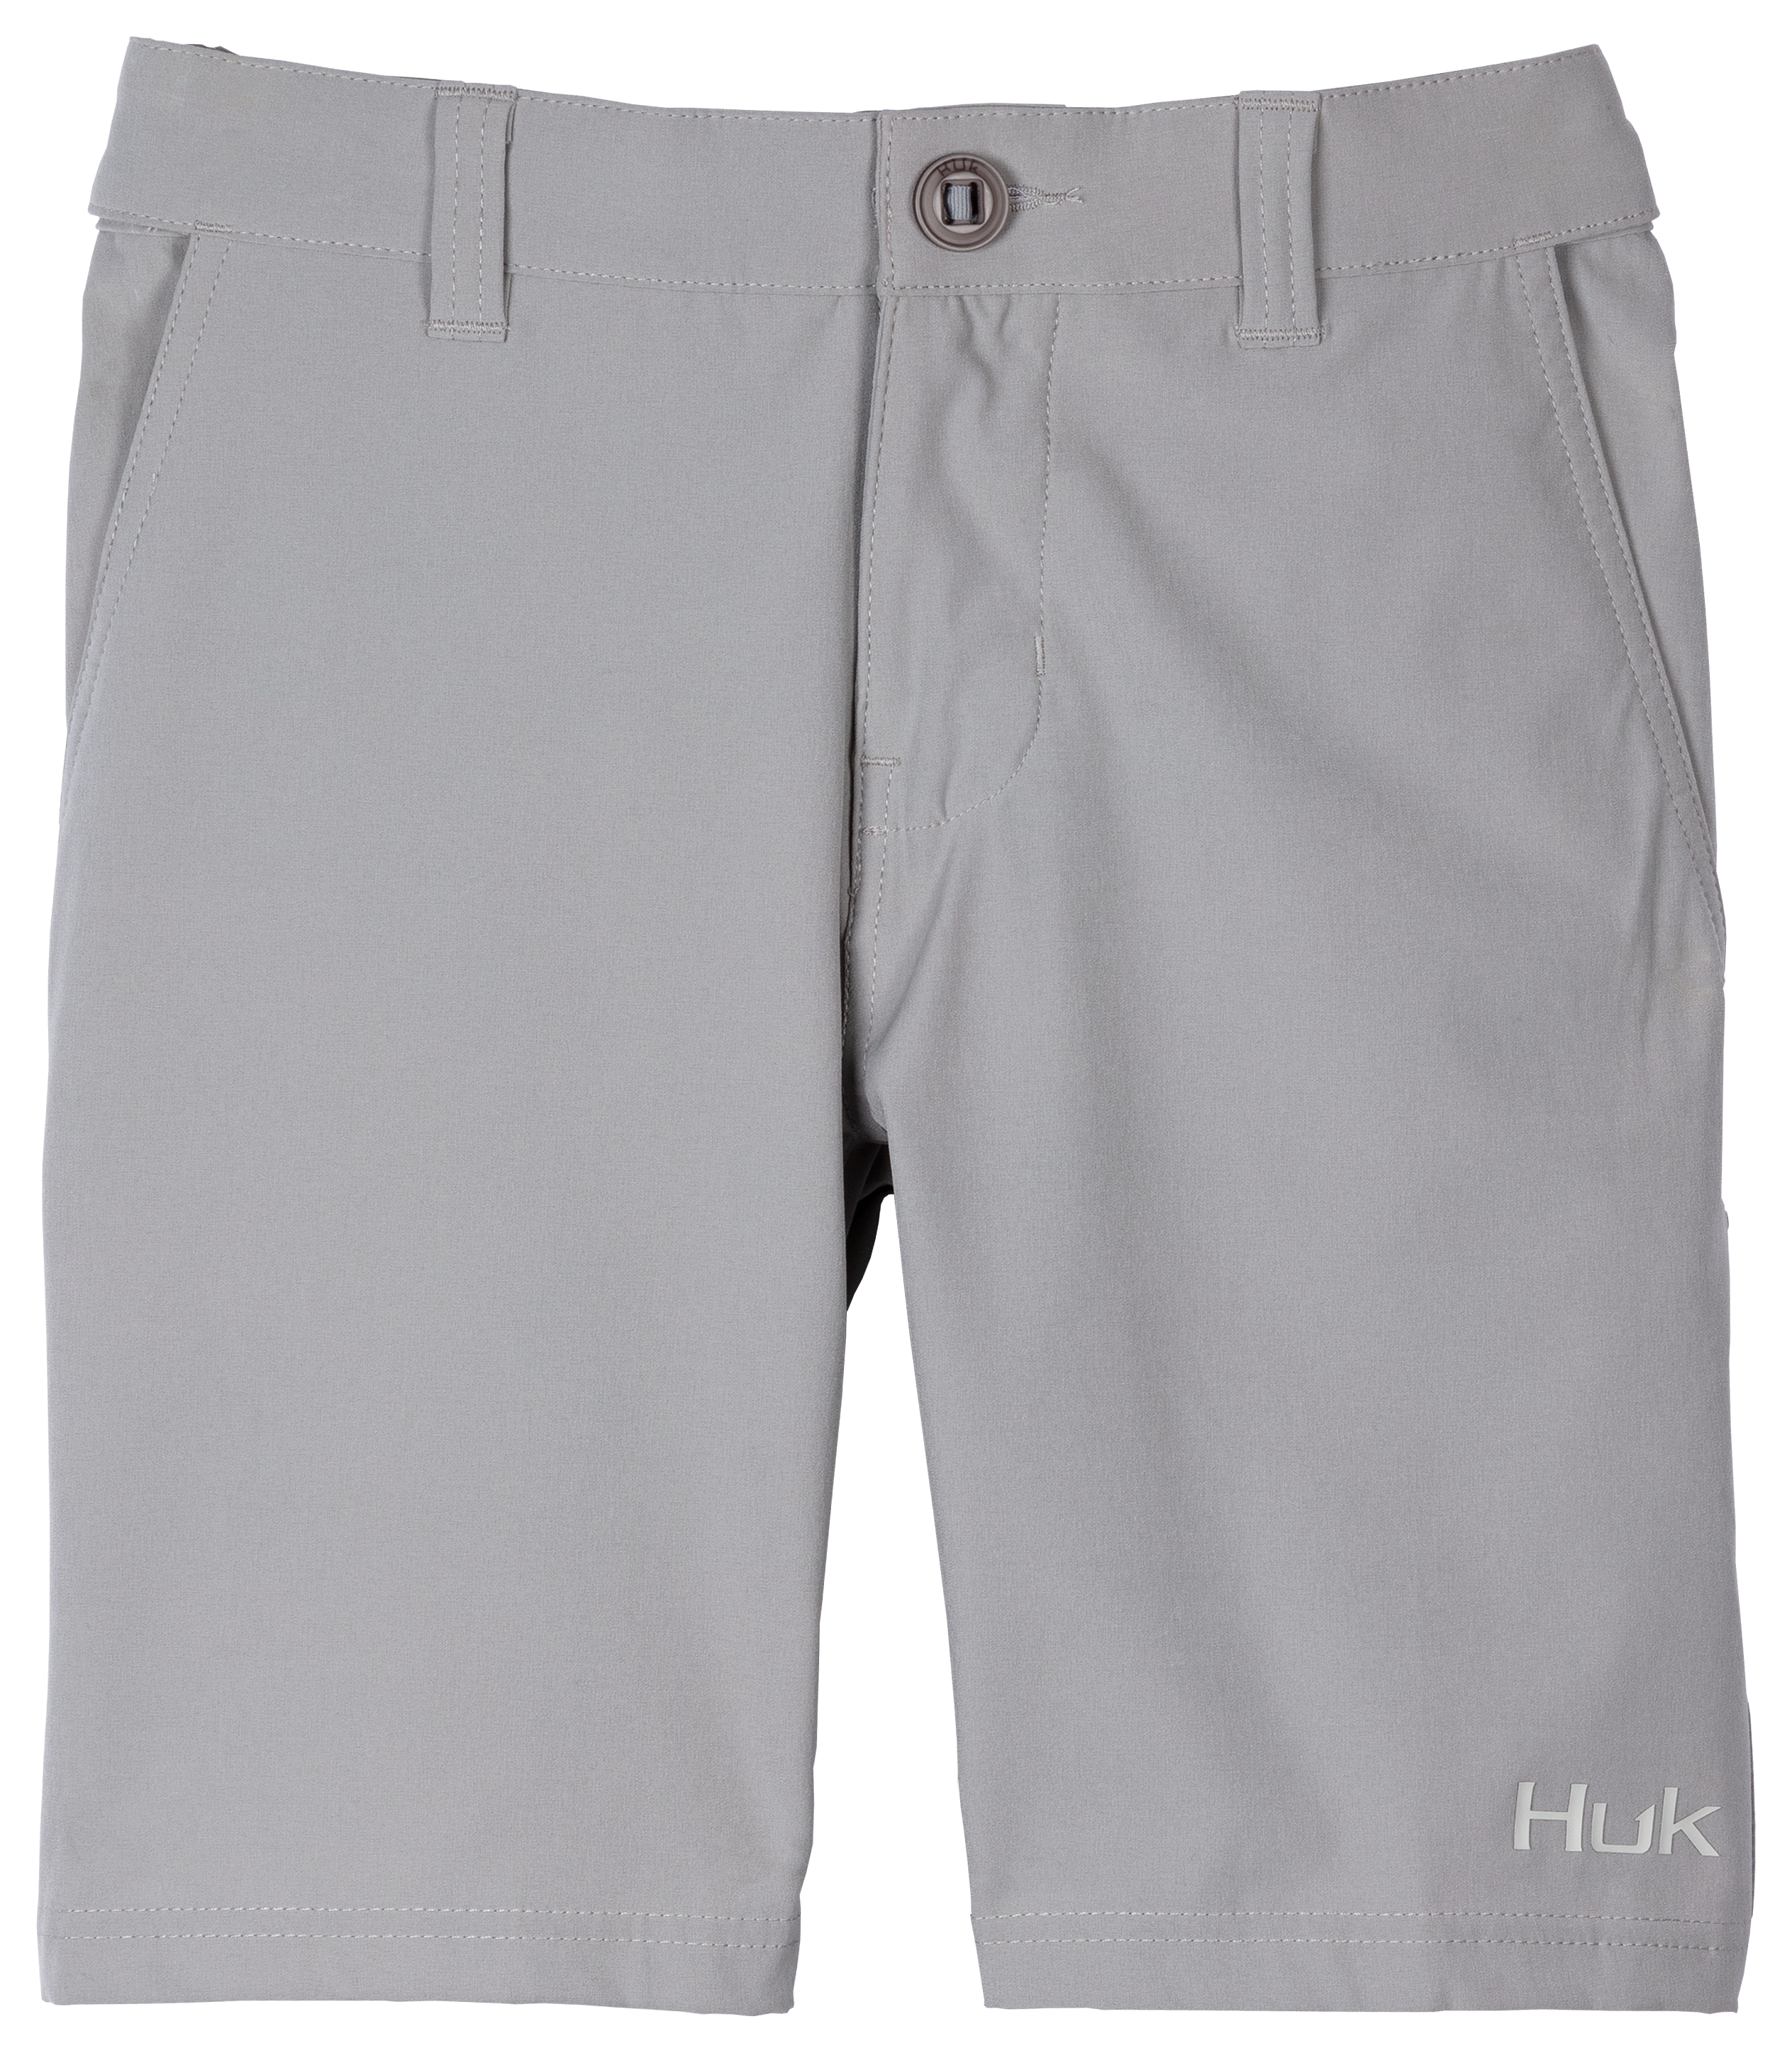 Huk Rogue Shorts for Kids Grey S